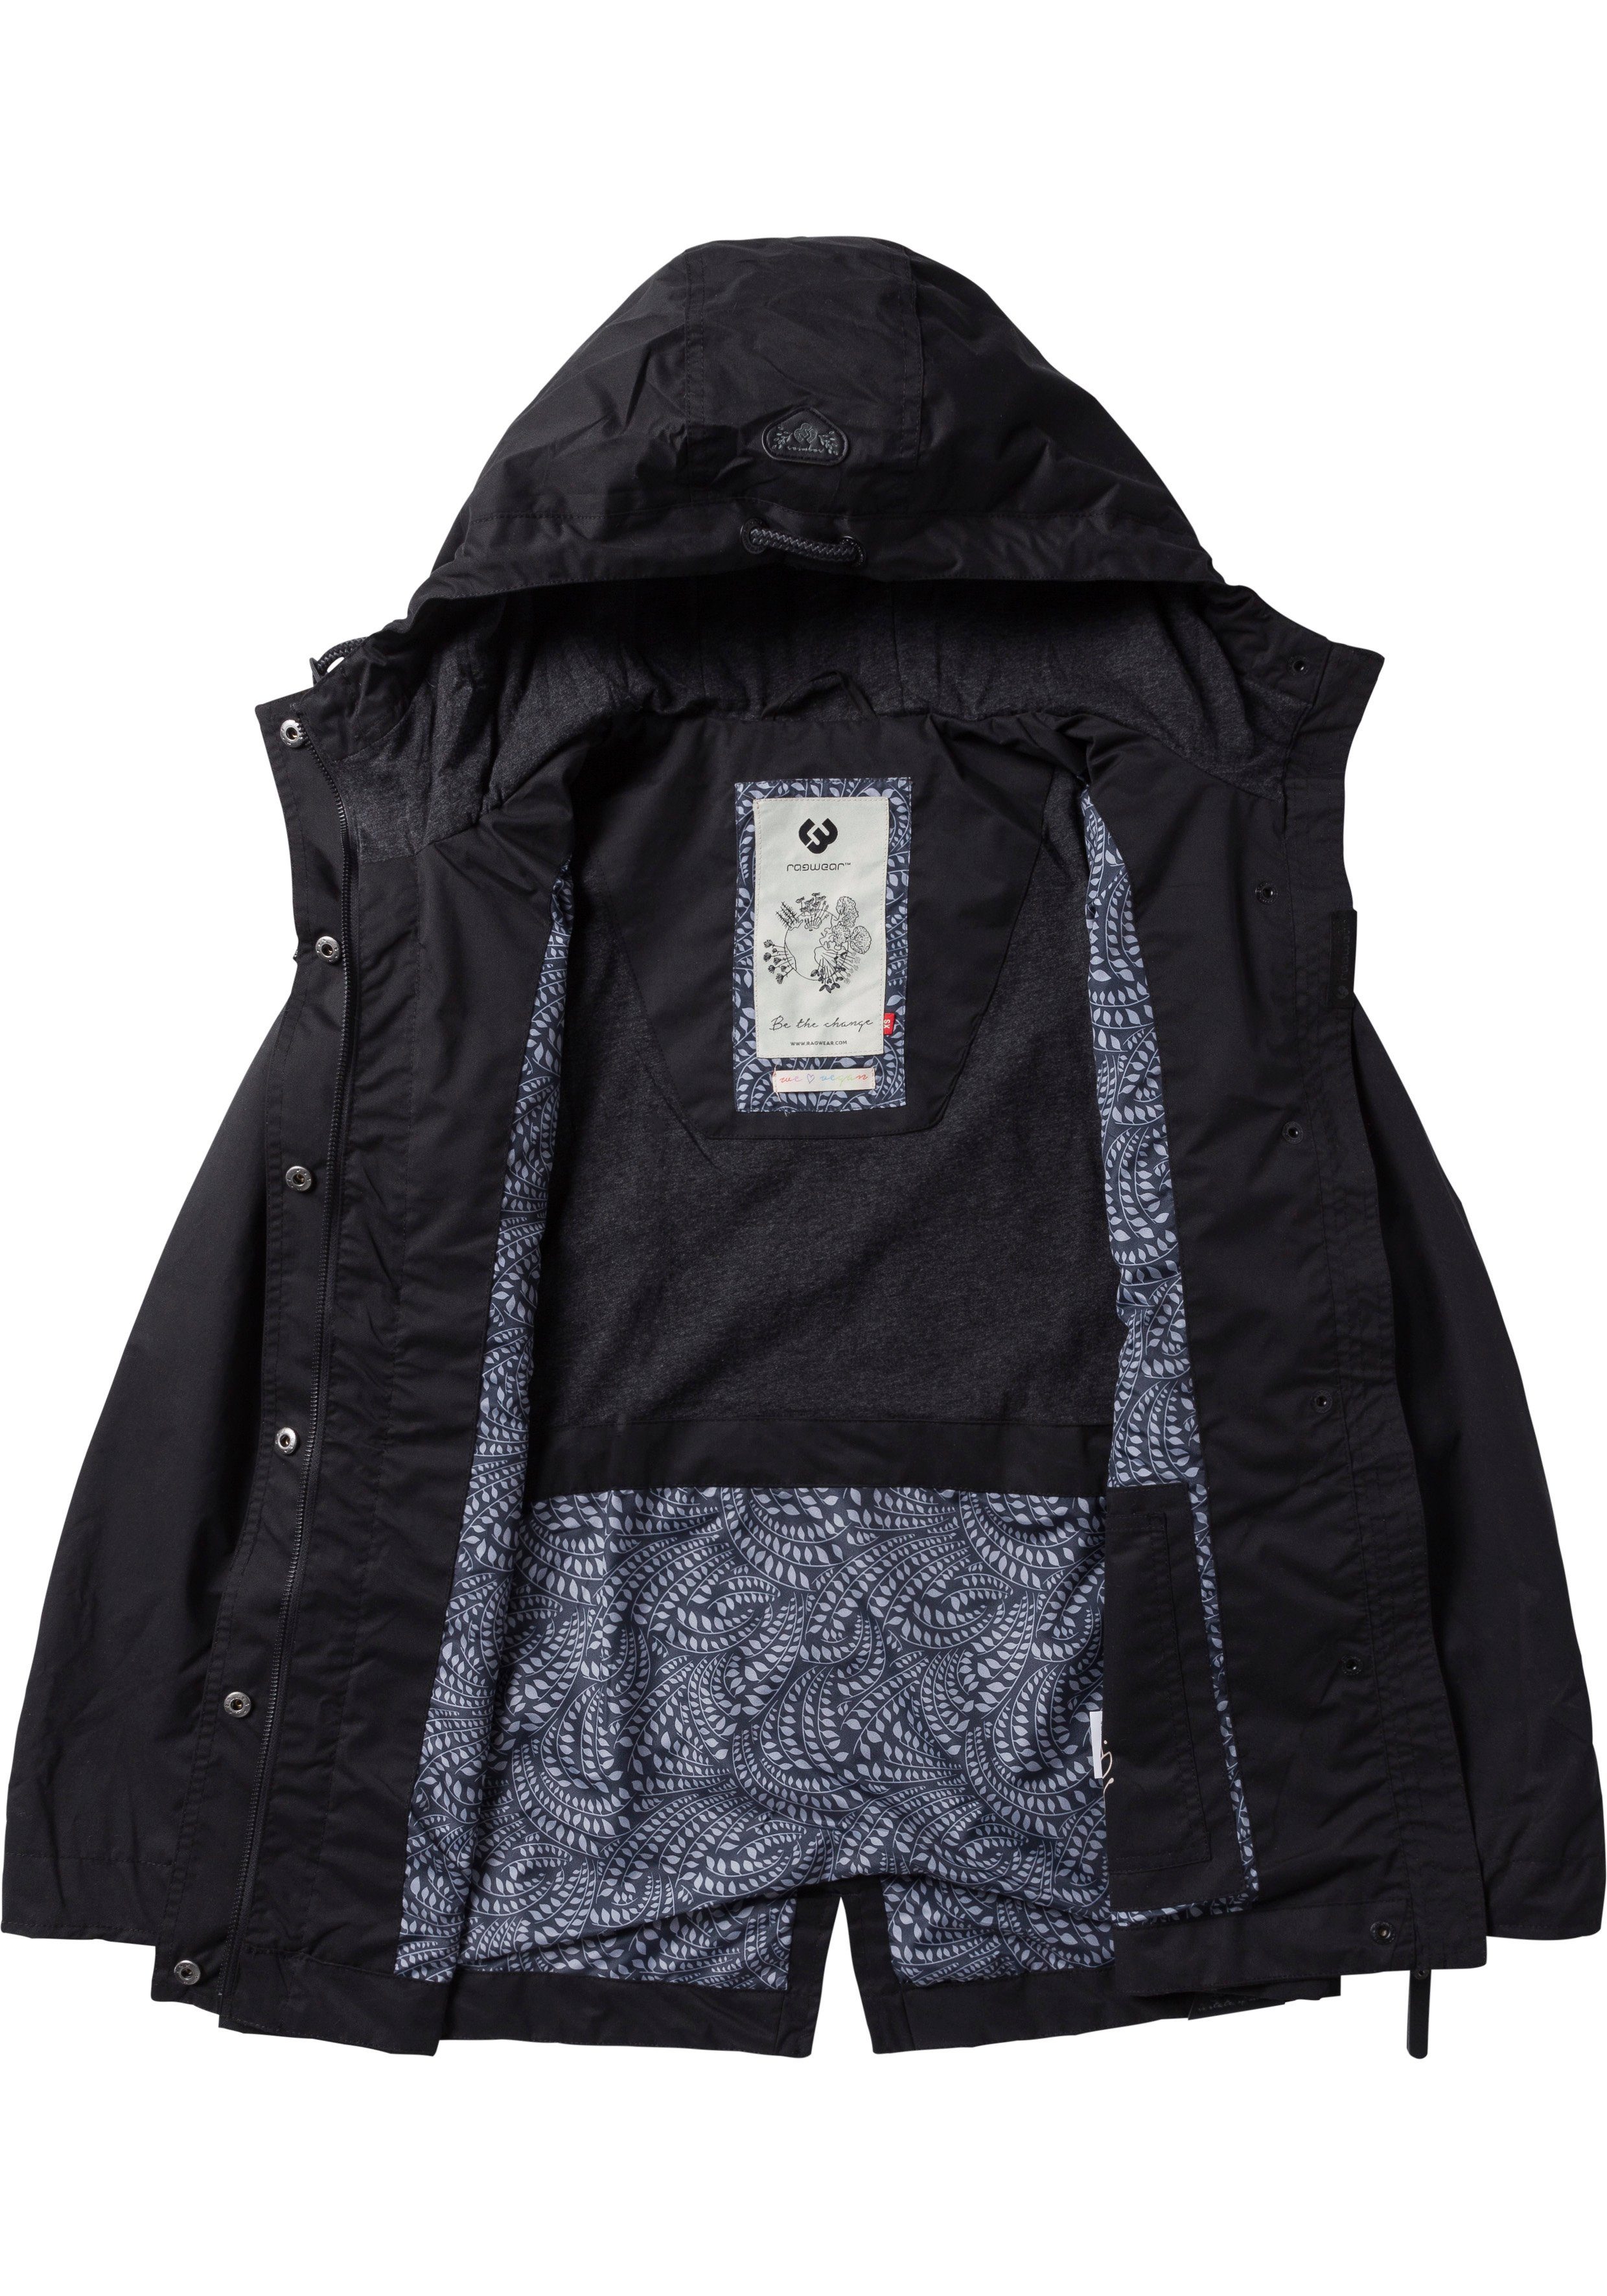 LENCA Ragwear Übergangsjacke black stylische fabric 1010 Funktionsjacke Waterproof